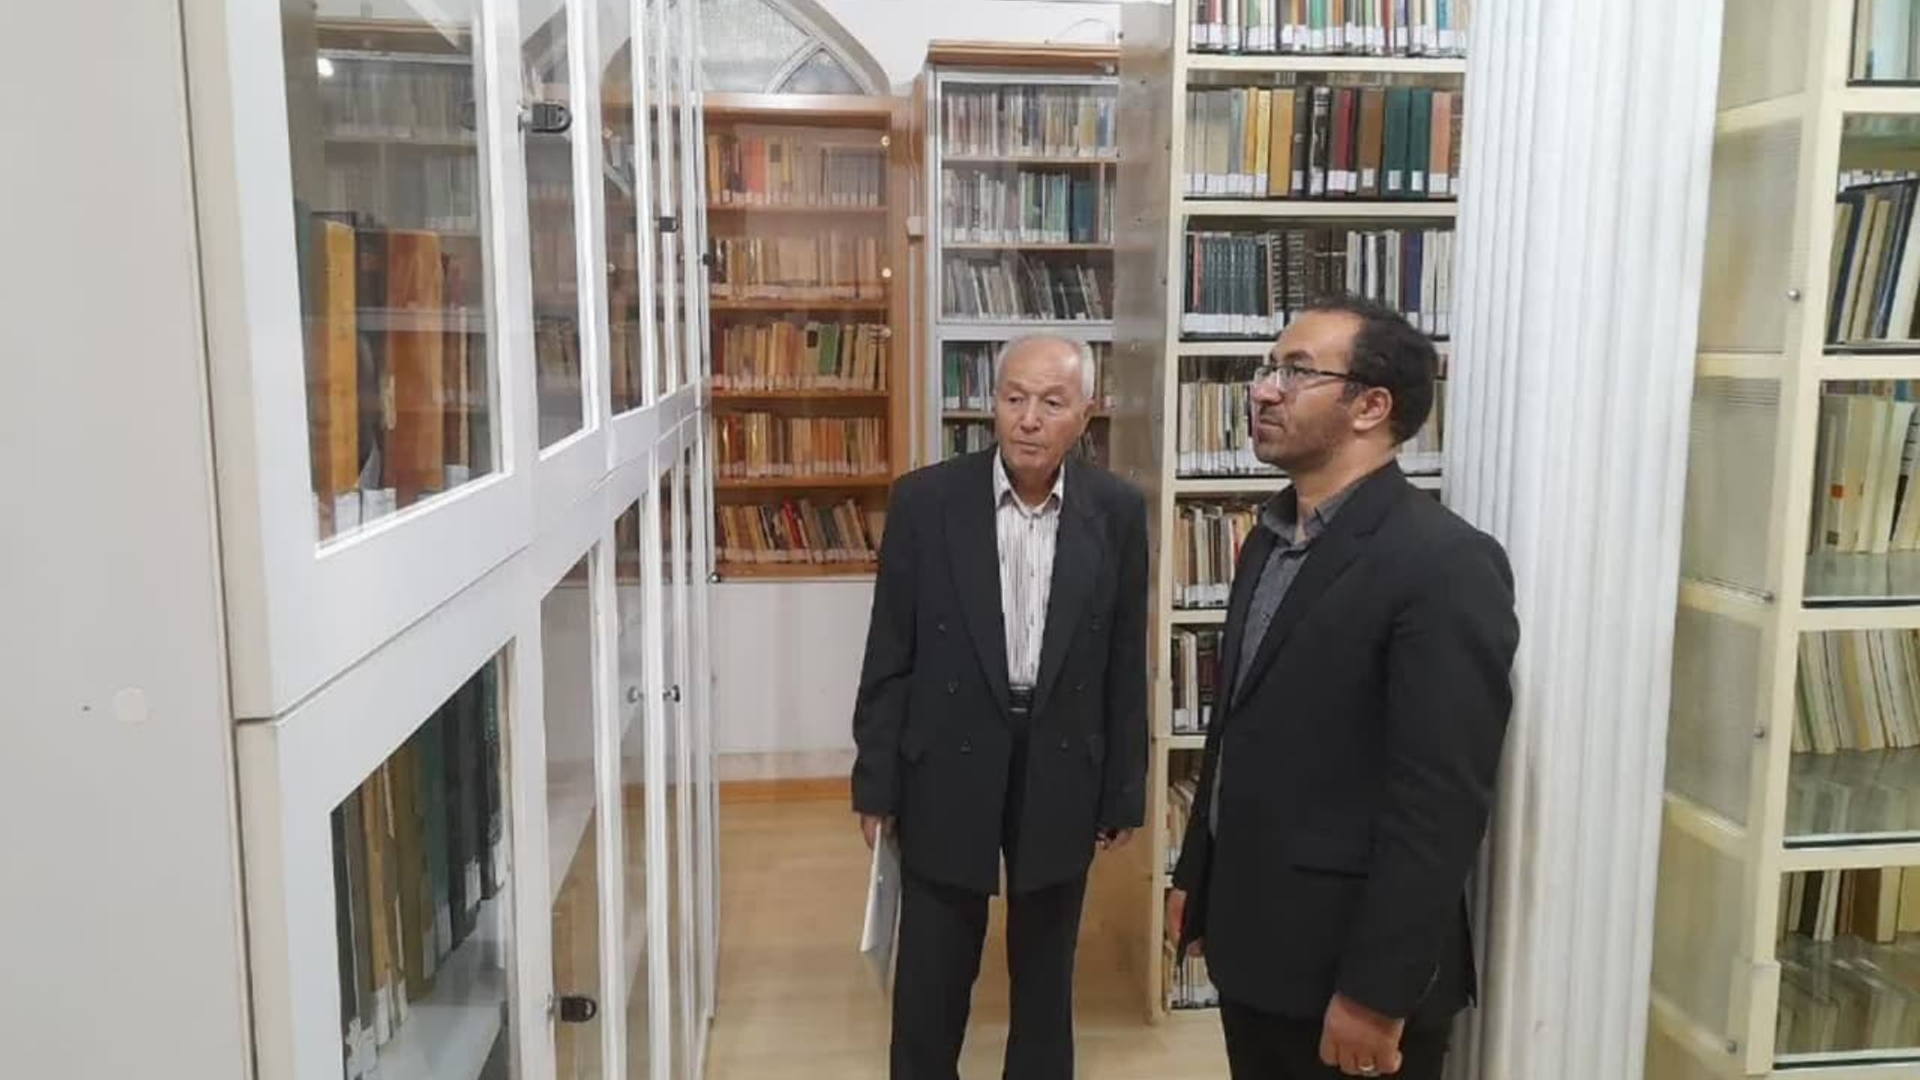 جواد اتابکی سرپرست فرمانداری شهرستان تفرش از موزه مردم شناسی و کتابخانه استاد نصیر بازدید کرد.